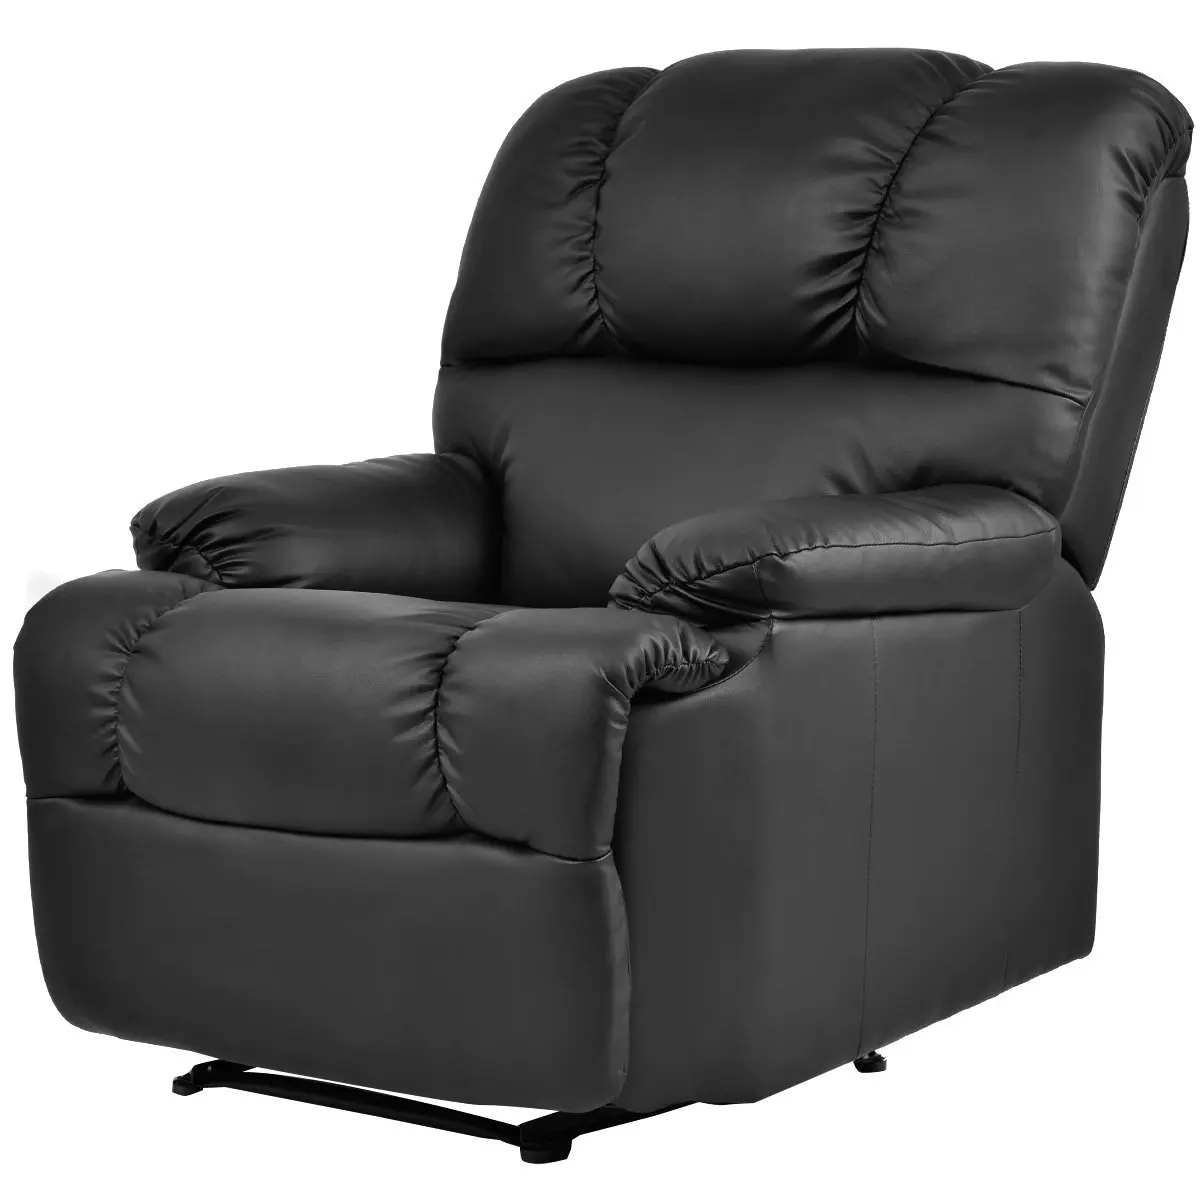 Buy Giantex Ergonomic Deluxe Massage Recliner Sofa Chair